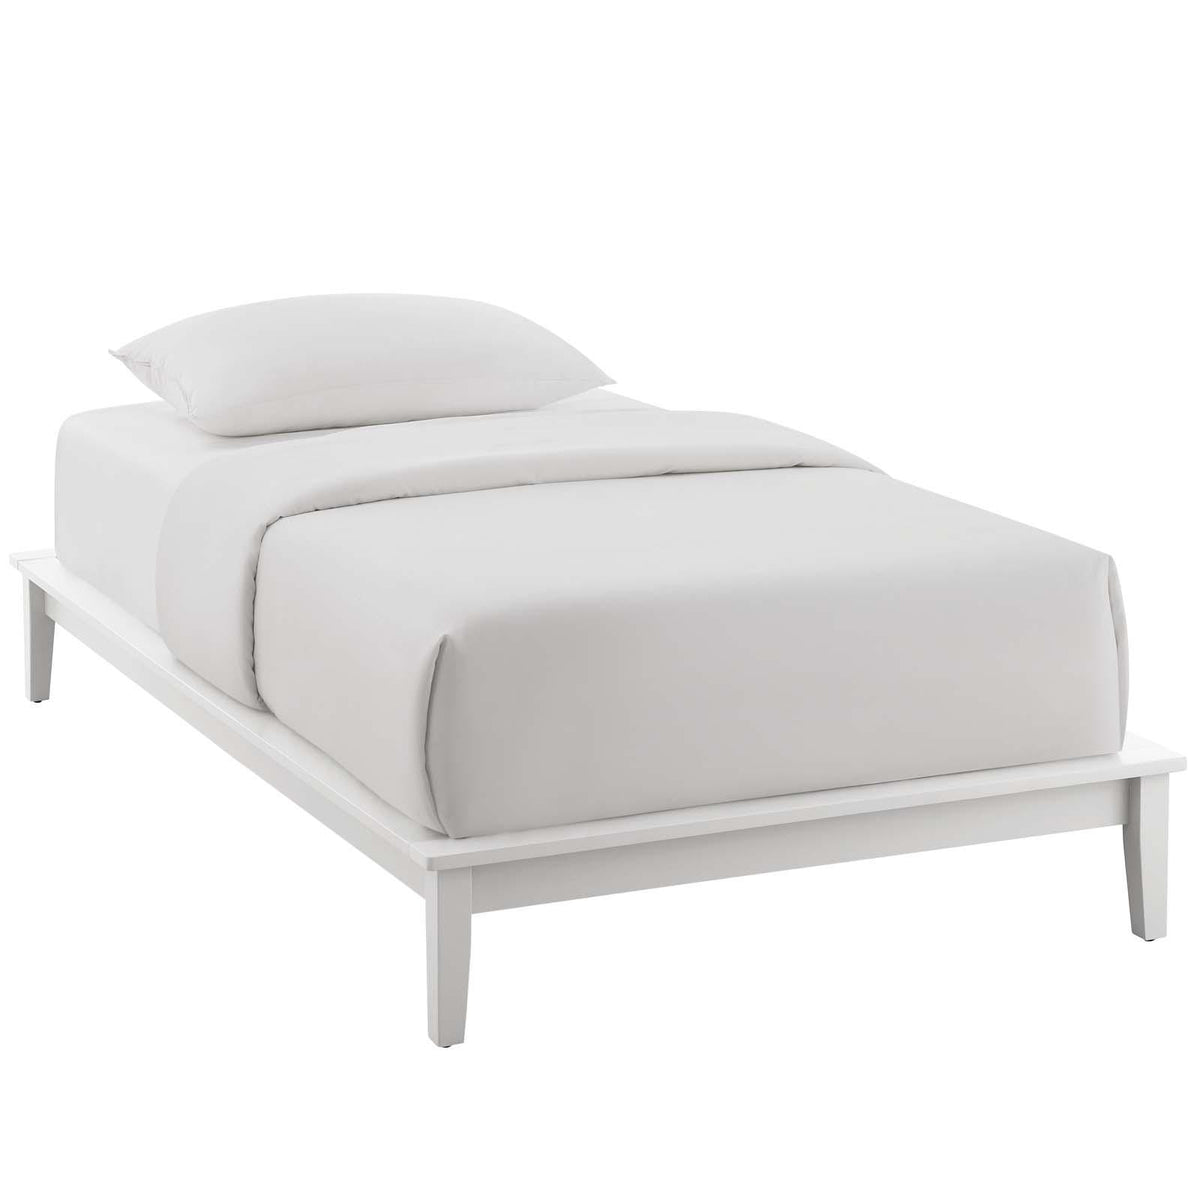 Modway Furniture Modern Lodge Twin Wood Platform Bed Frame - MOD-6053